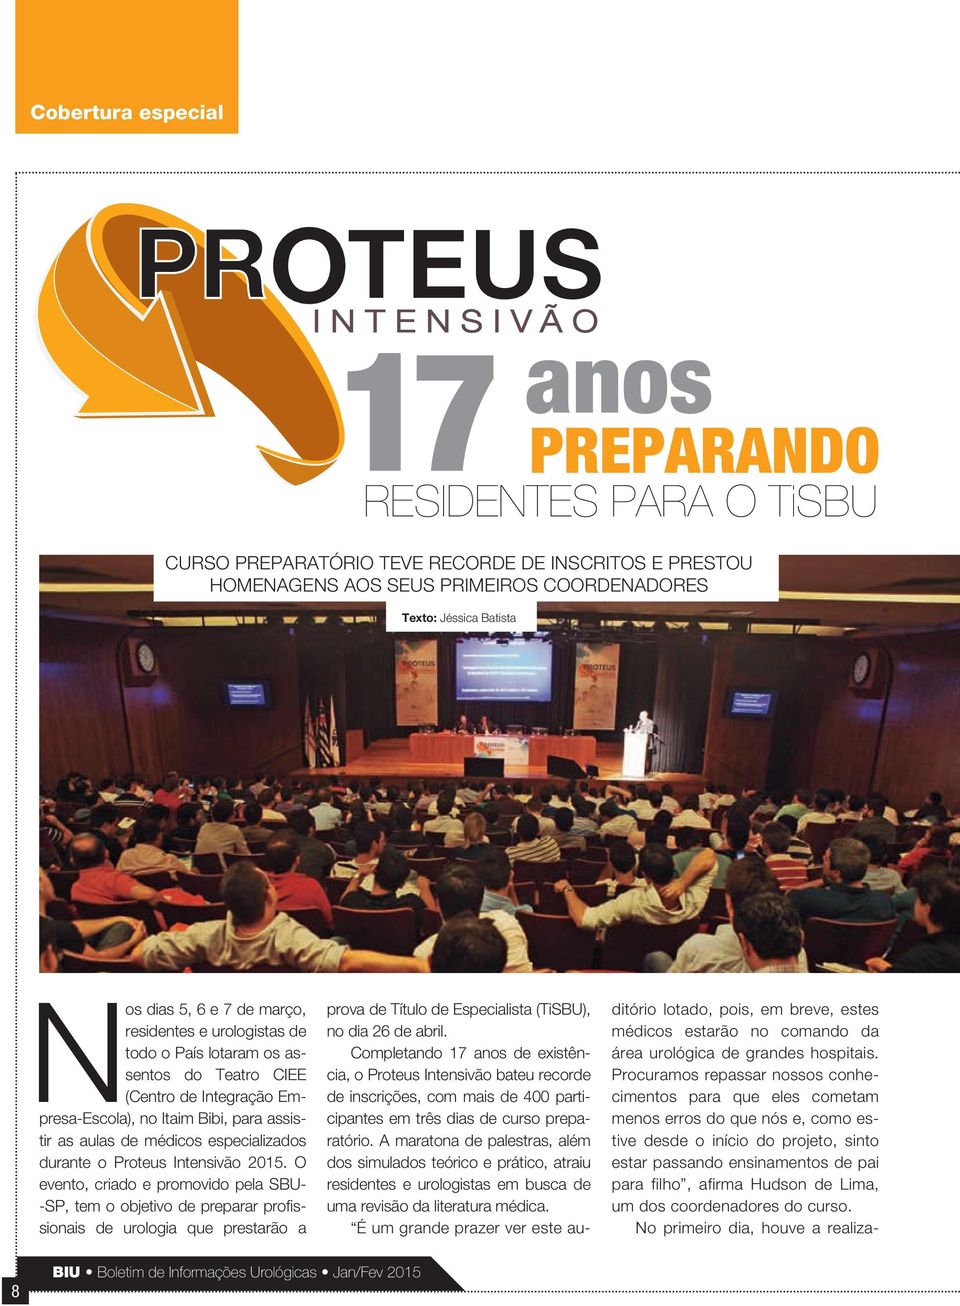 Proteus Intensivão 2015. O evento, criado e promovido pela SBU- -SP, tem o objetivo de preparar profissionais de urologia que prestarão a prova de Título de Especialista (TiSBU), no dia 26 de abril.